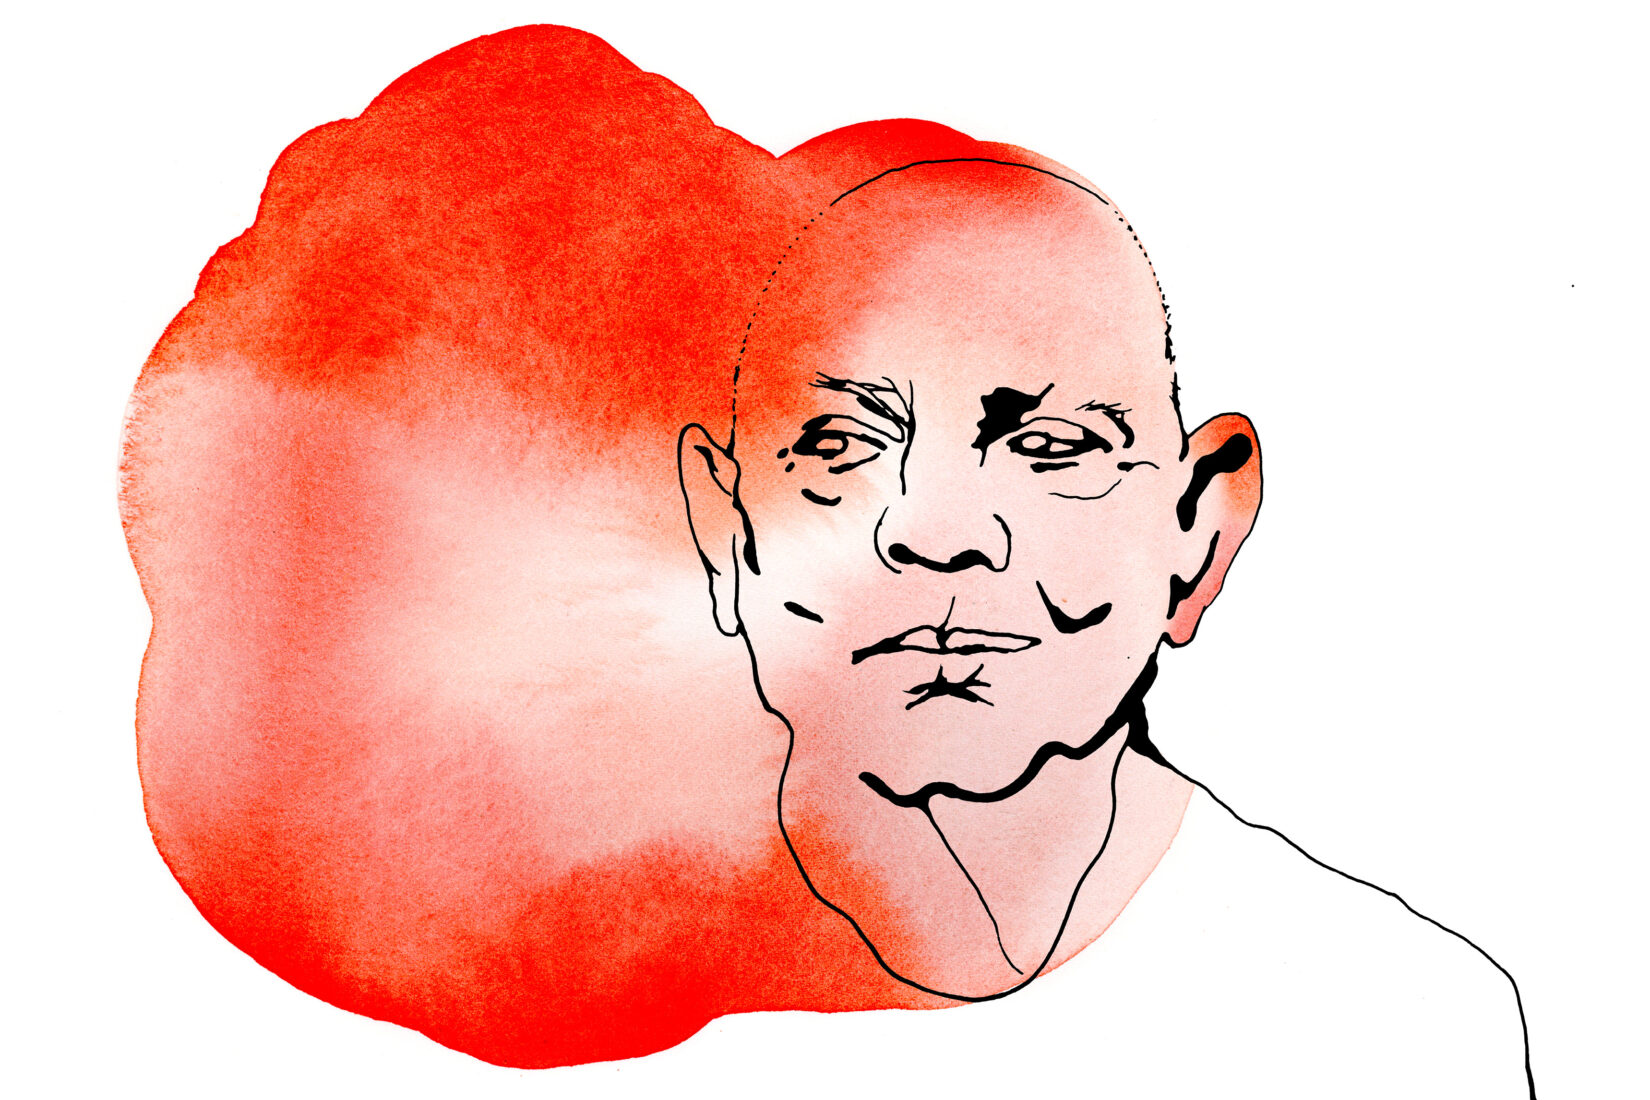 Dessin en noir et blanc représentant Lars Norén avec un aplat de couleur rouge orangé autour de son visage.